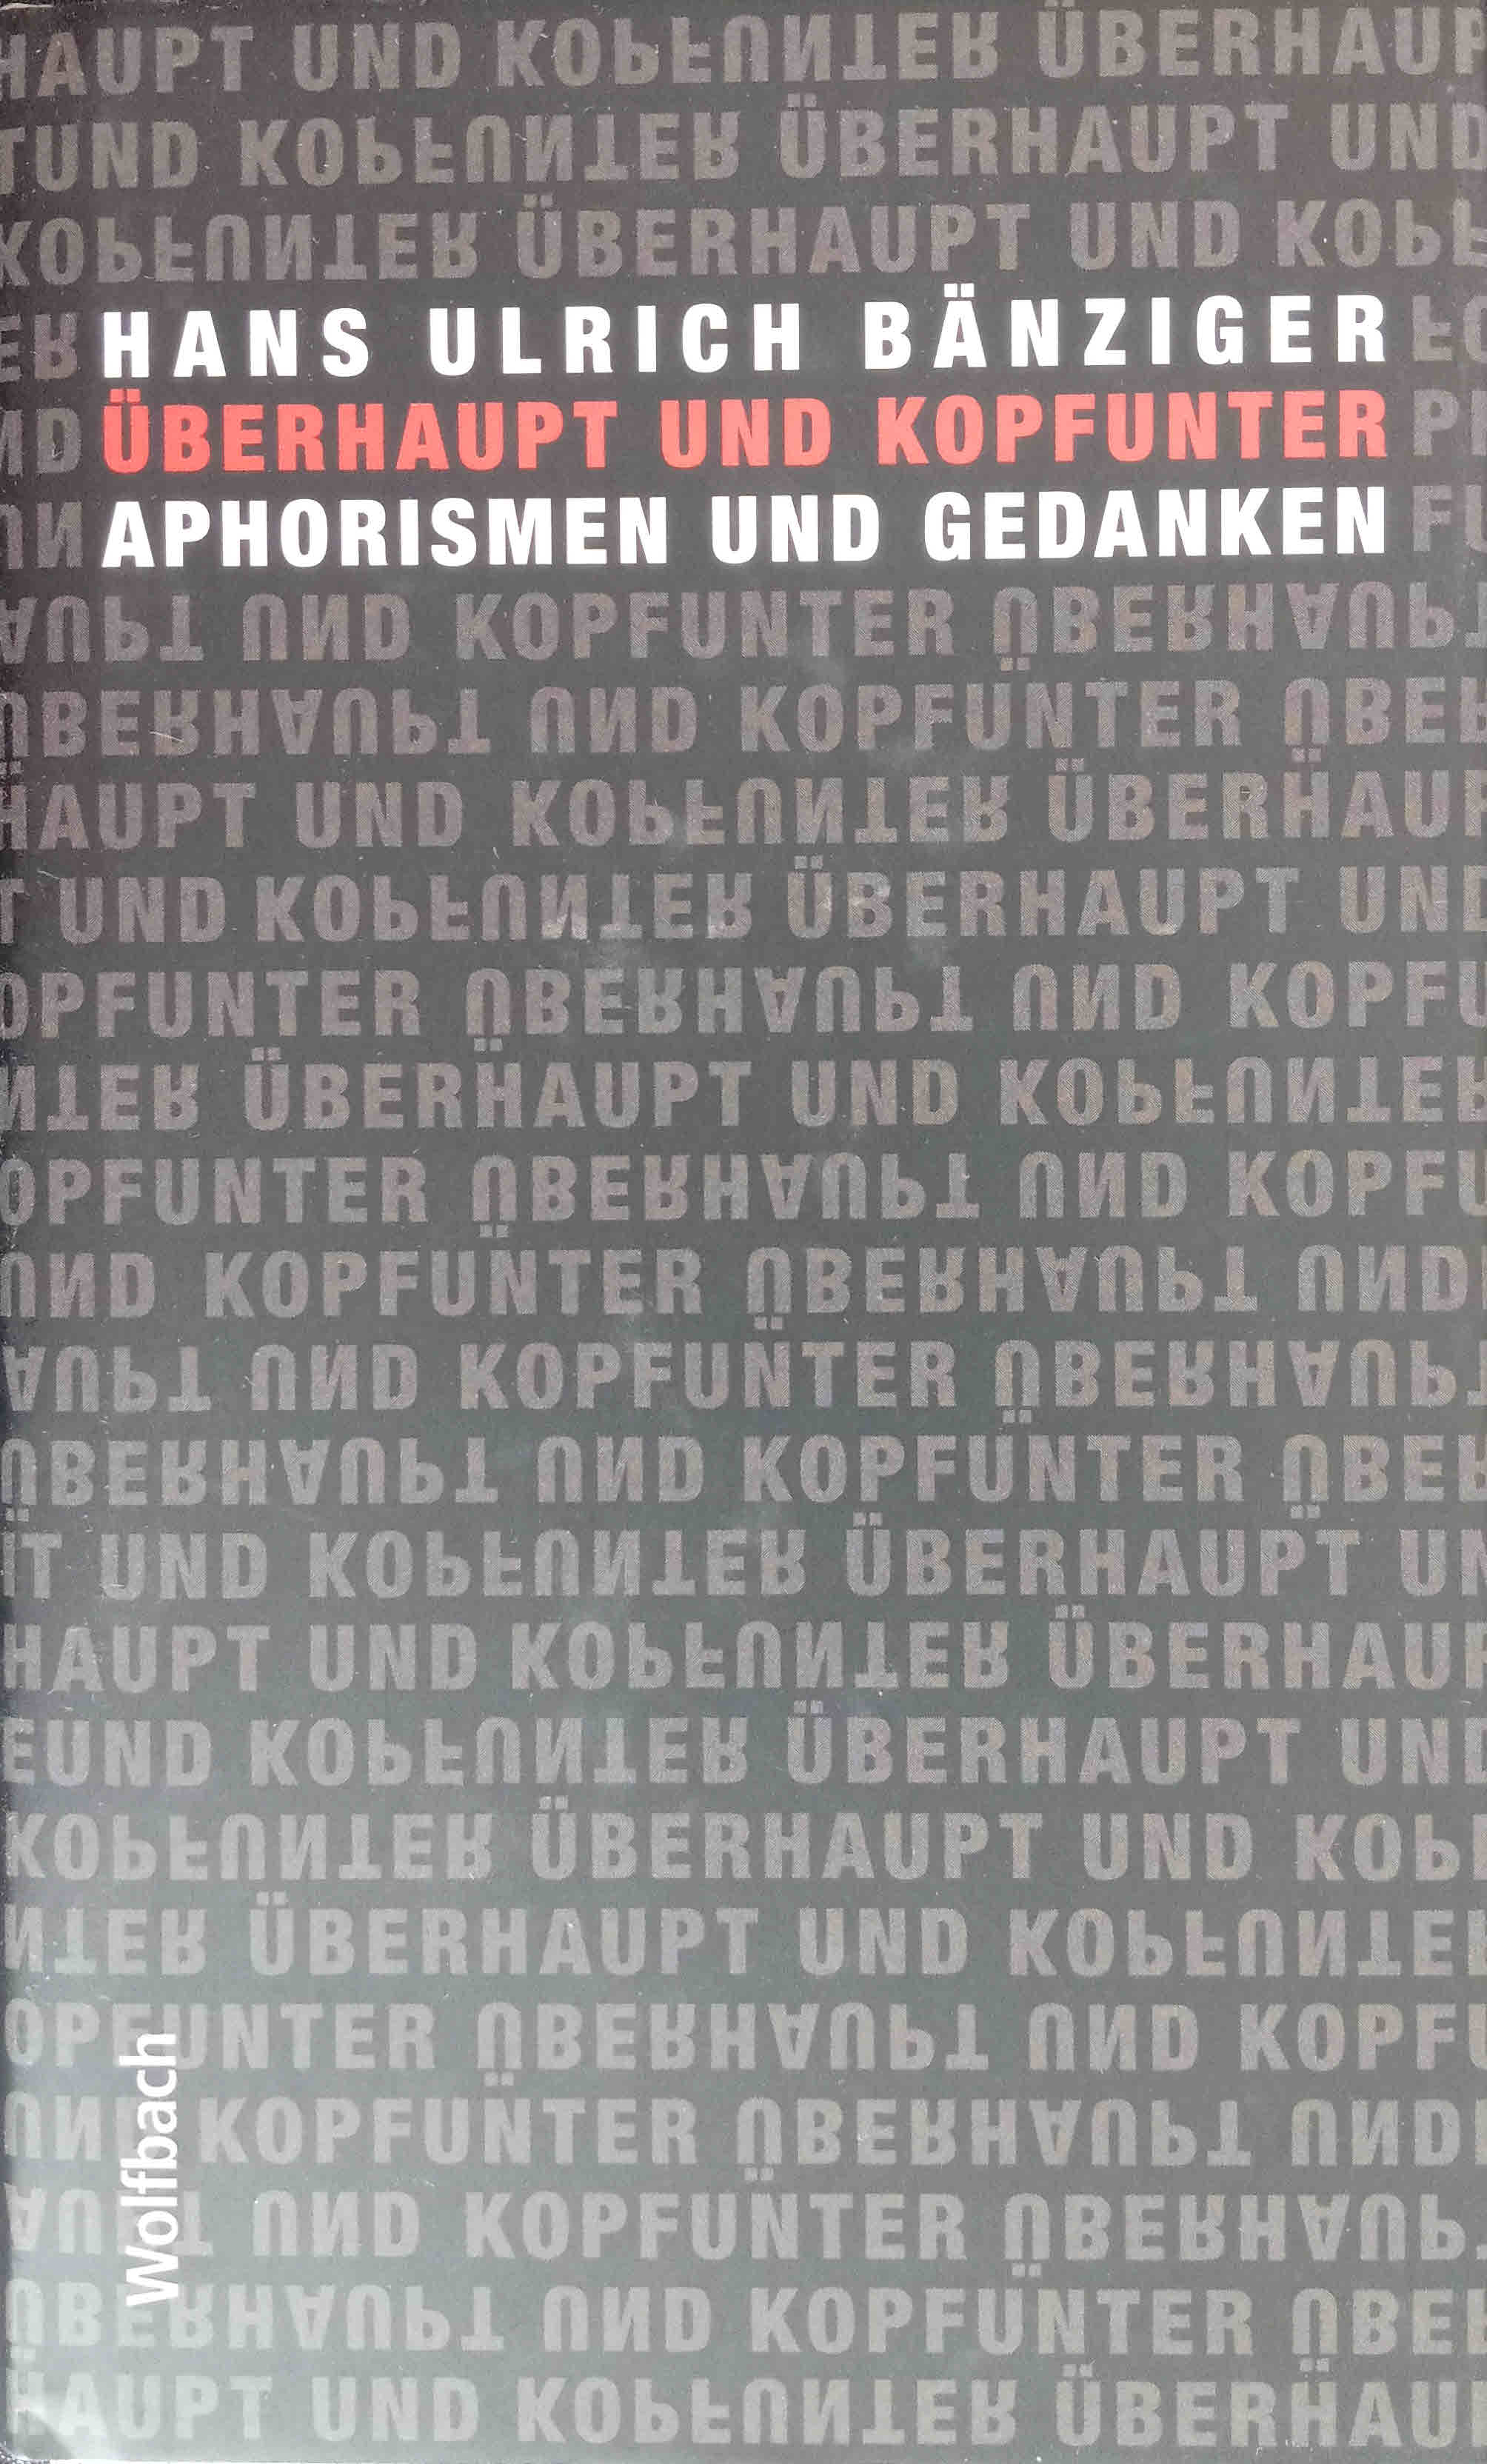 Überhaupt und kopfunter : Aphorismen und Gedanken. - Bänziger, Hans Ulrich